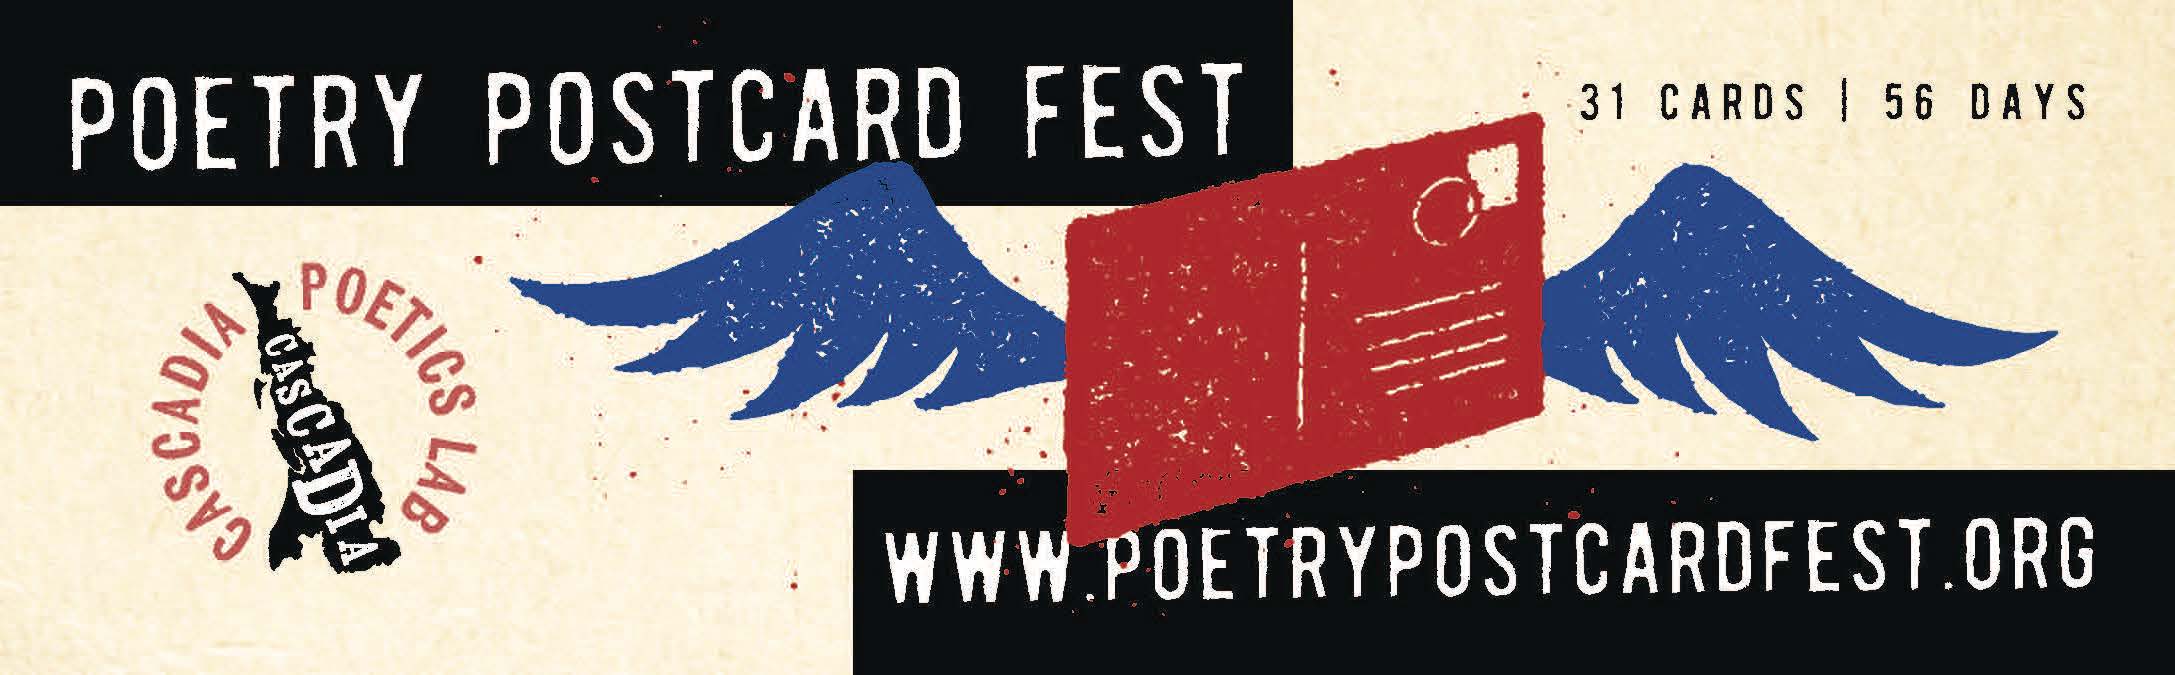 Postcard Fest Registration Ends July 4